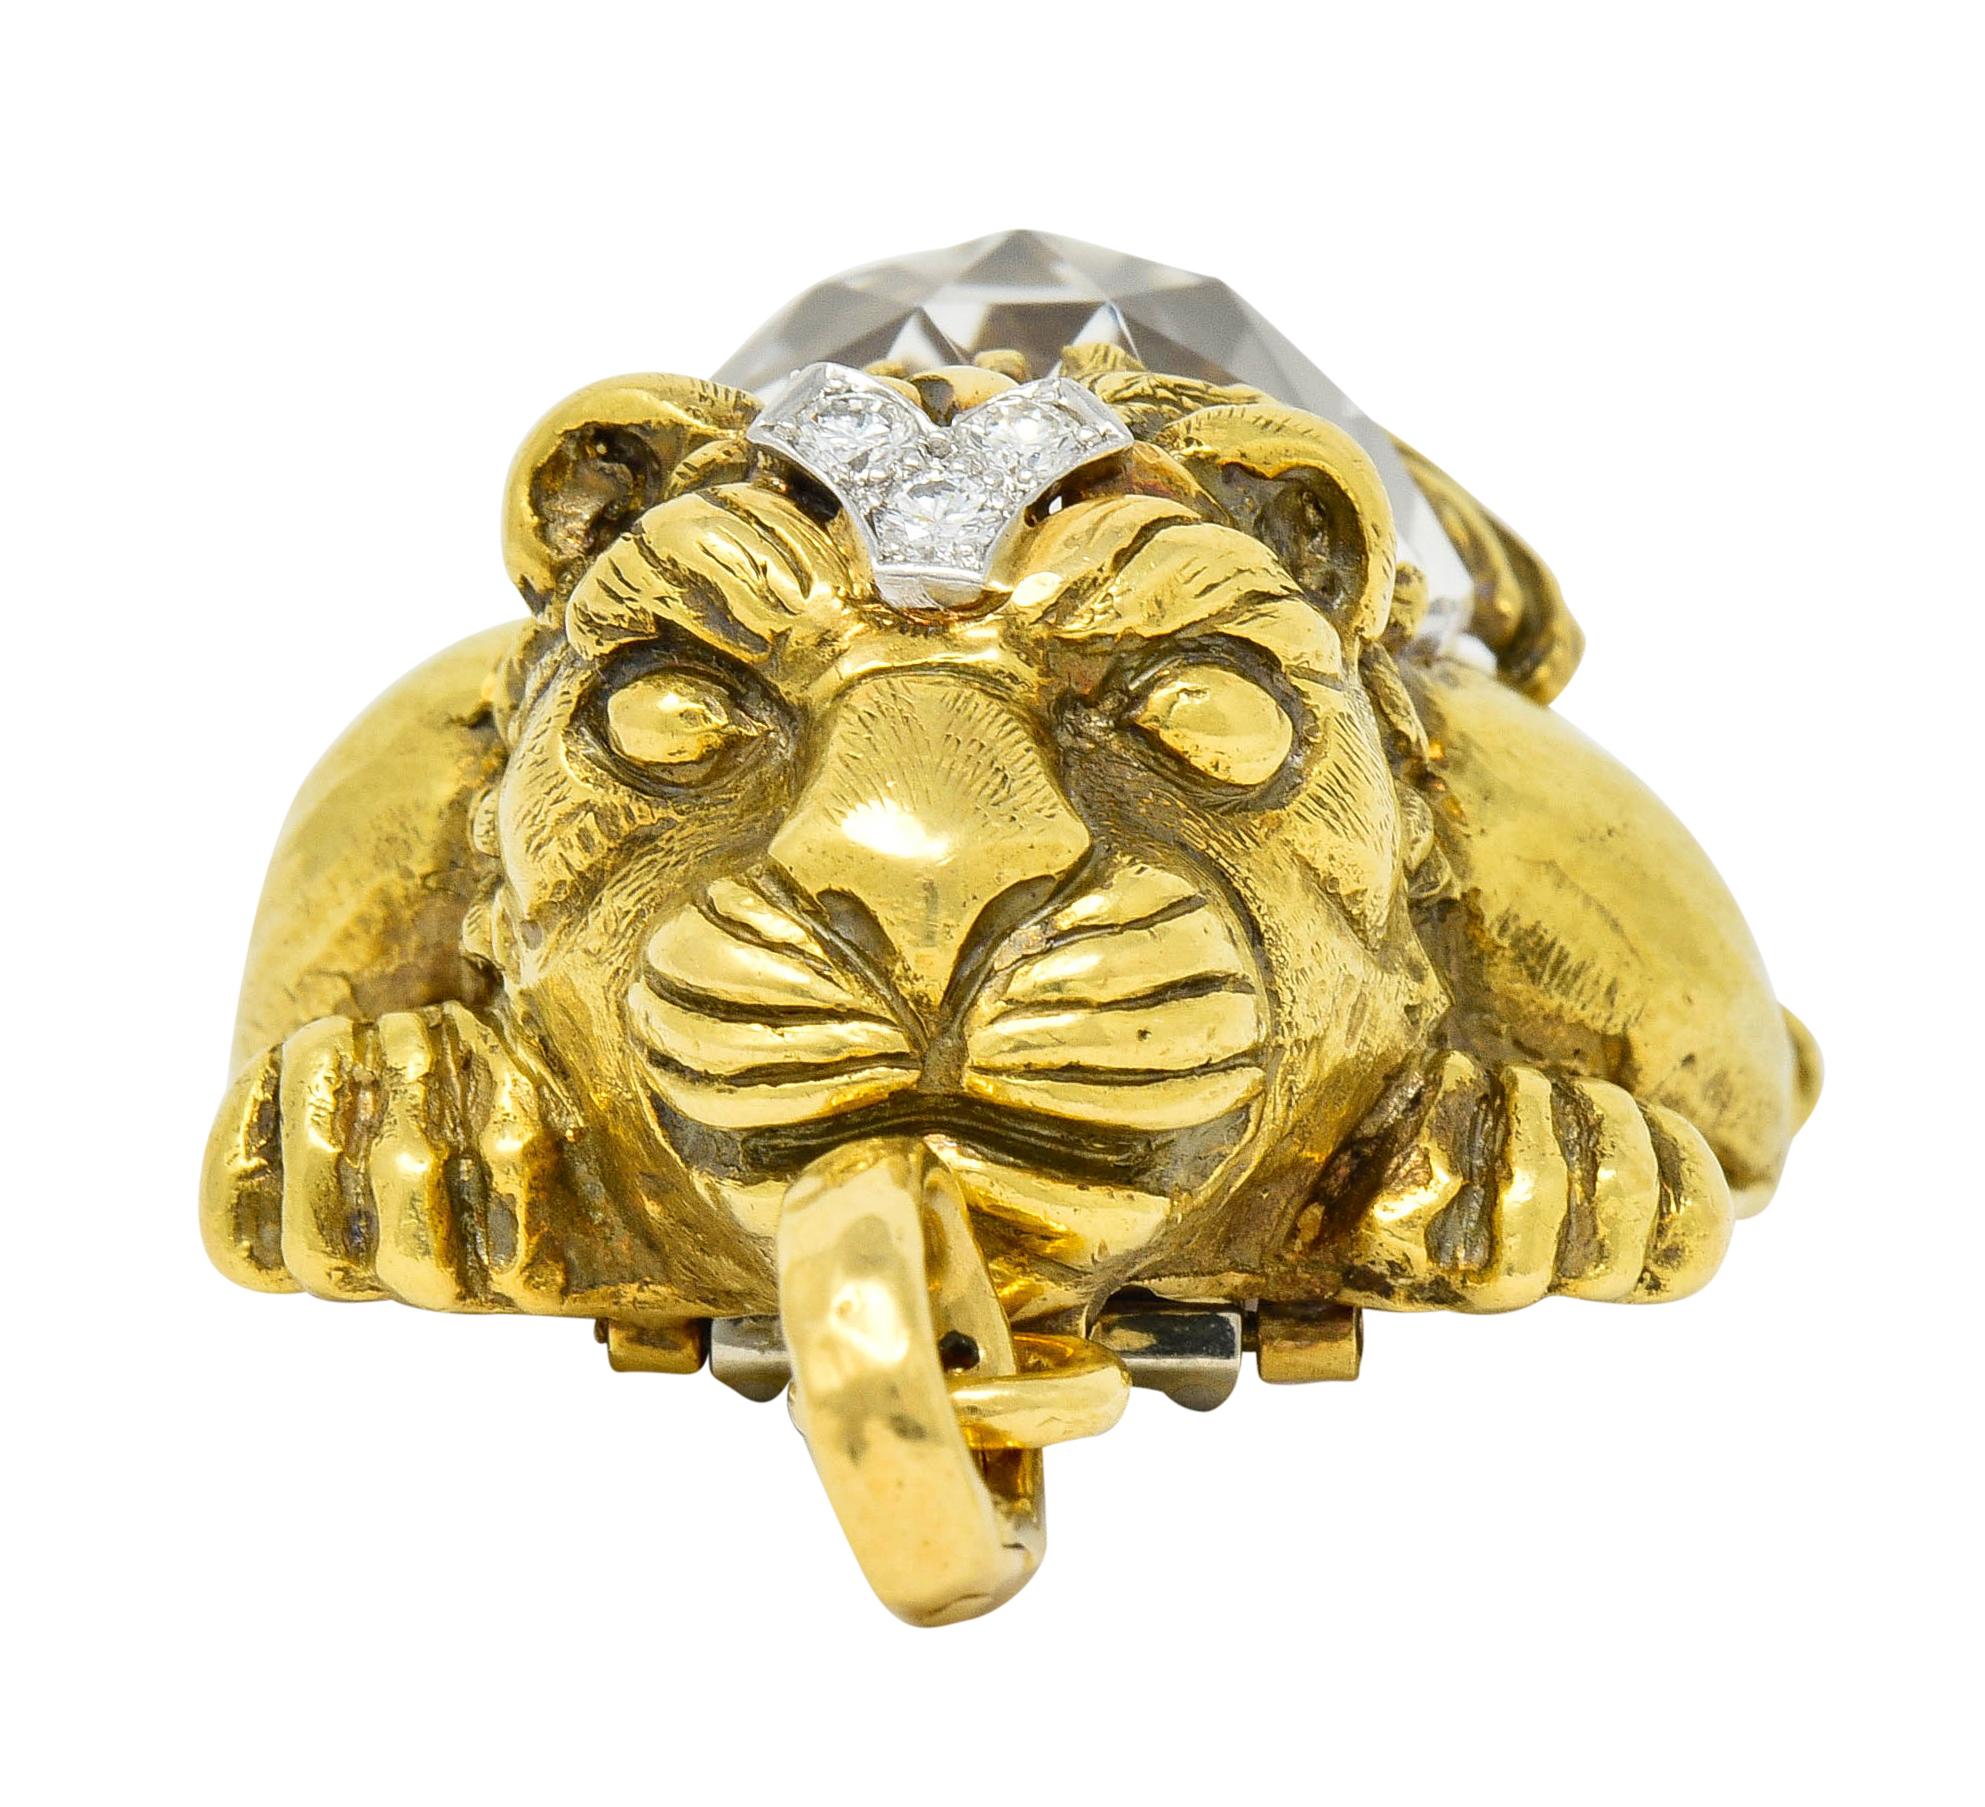 Contemporary Substantial David Webb Diamond Rock Crystal 18 Karat Gold Lion Pendant Brooch